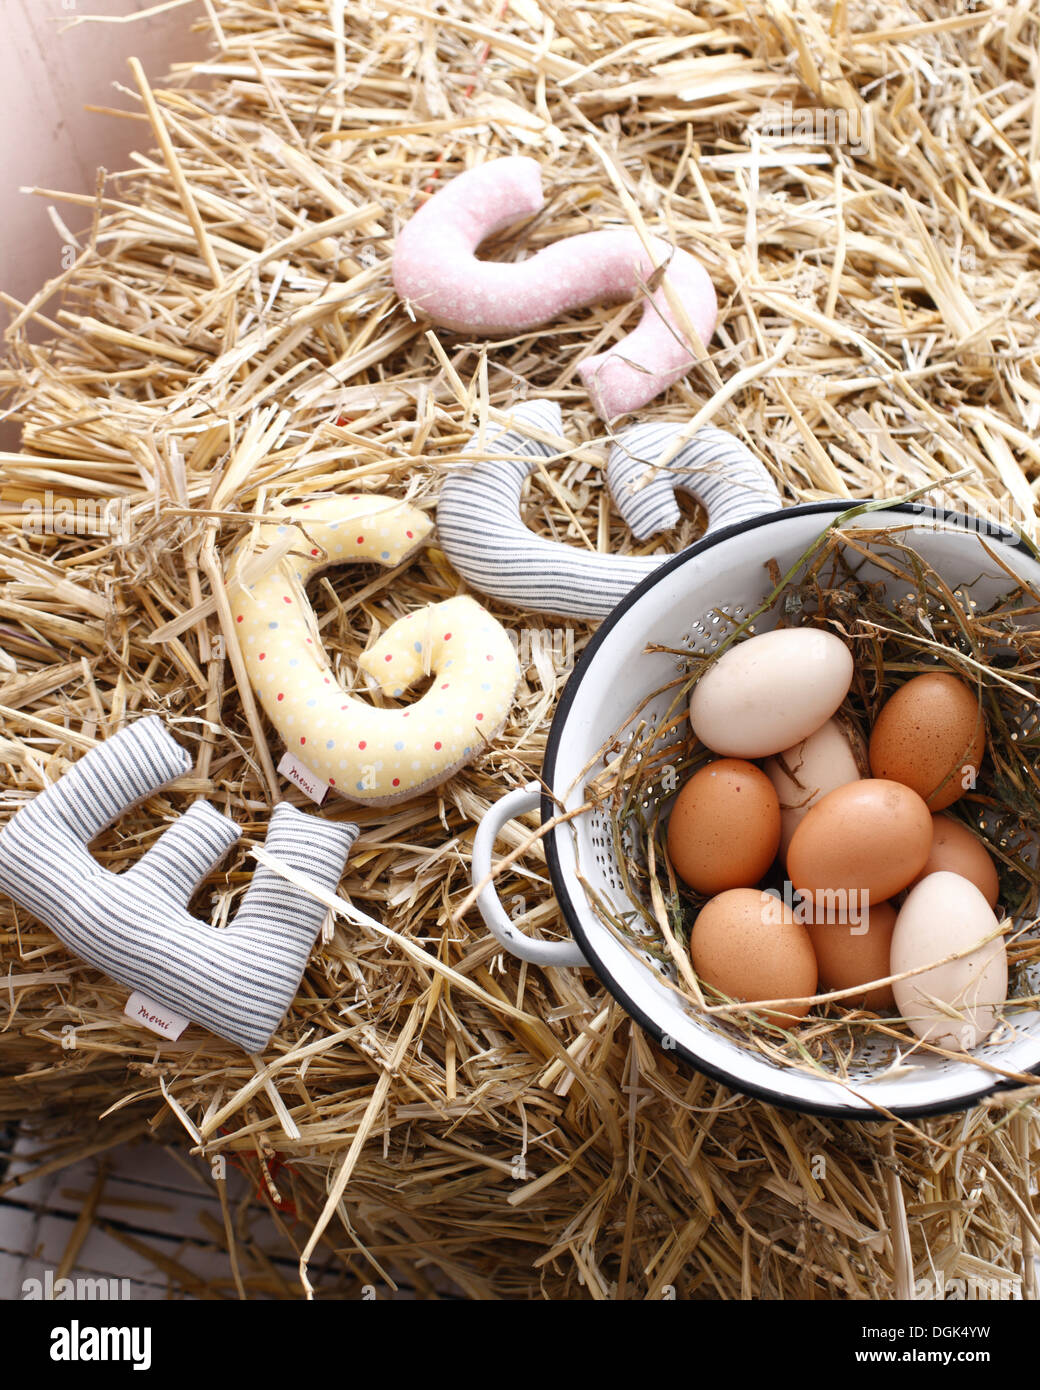 La vie encore d'œufs biologiques in colander Banque D'Images